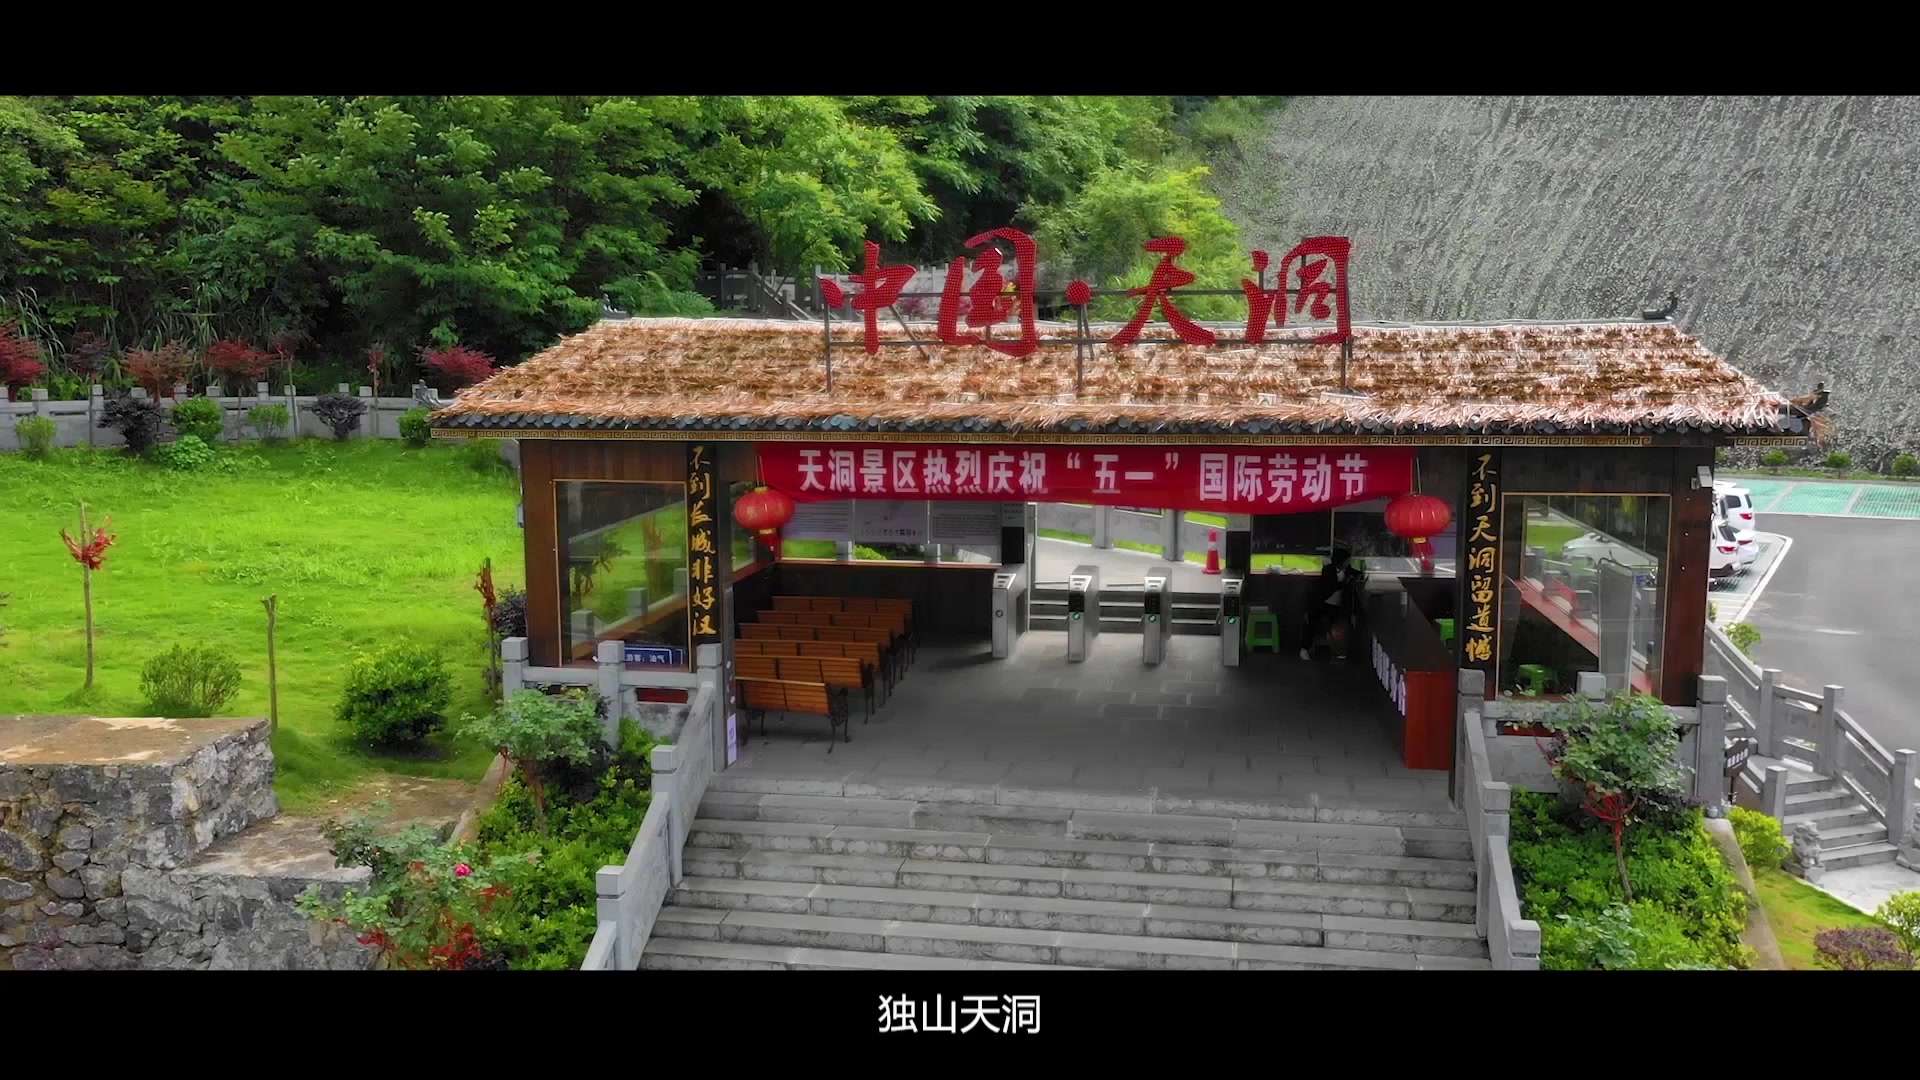 独山县天洞景区 4A宣传片